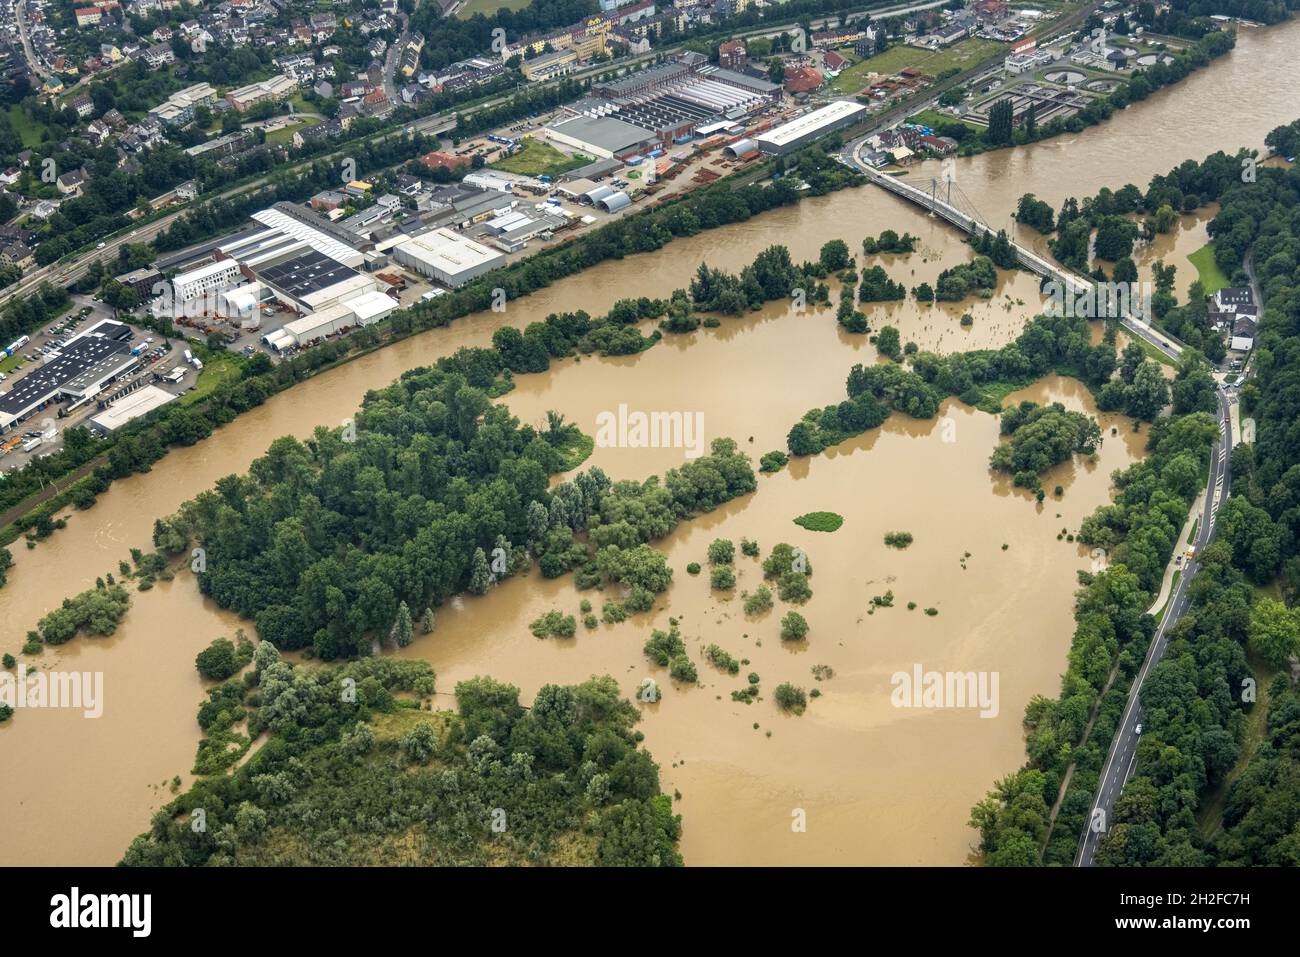 Photographie aérienne, inondation de Ruhr, inondation, Cavos, Kupferdreh,Essen, région de la Ruhr, Rhénanie-du-Nord-Westphalie, Allemagne, Luftbild,Ruhrhochwasser, Überschwemmun Banque D'Images